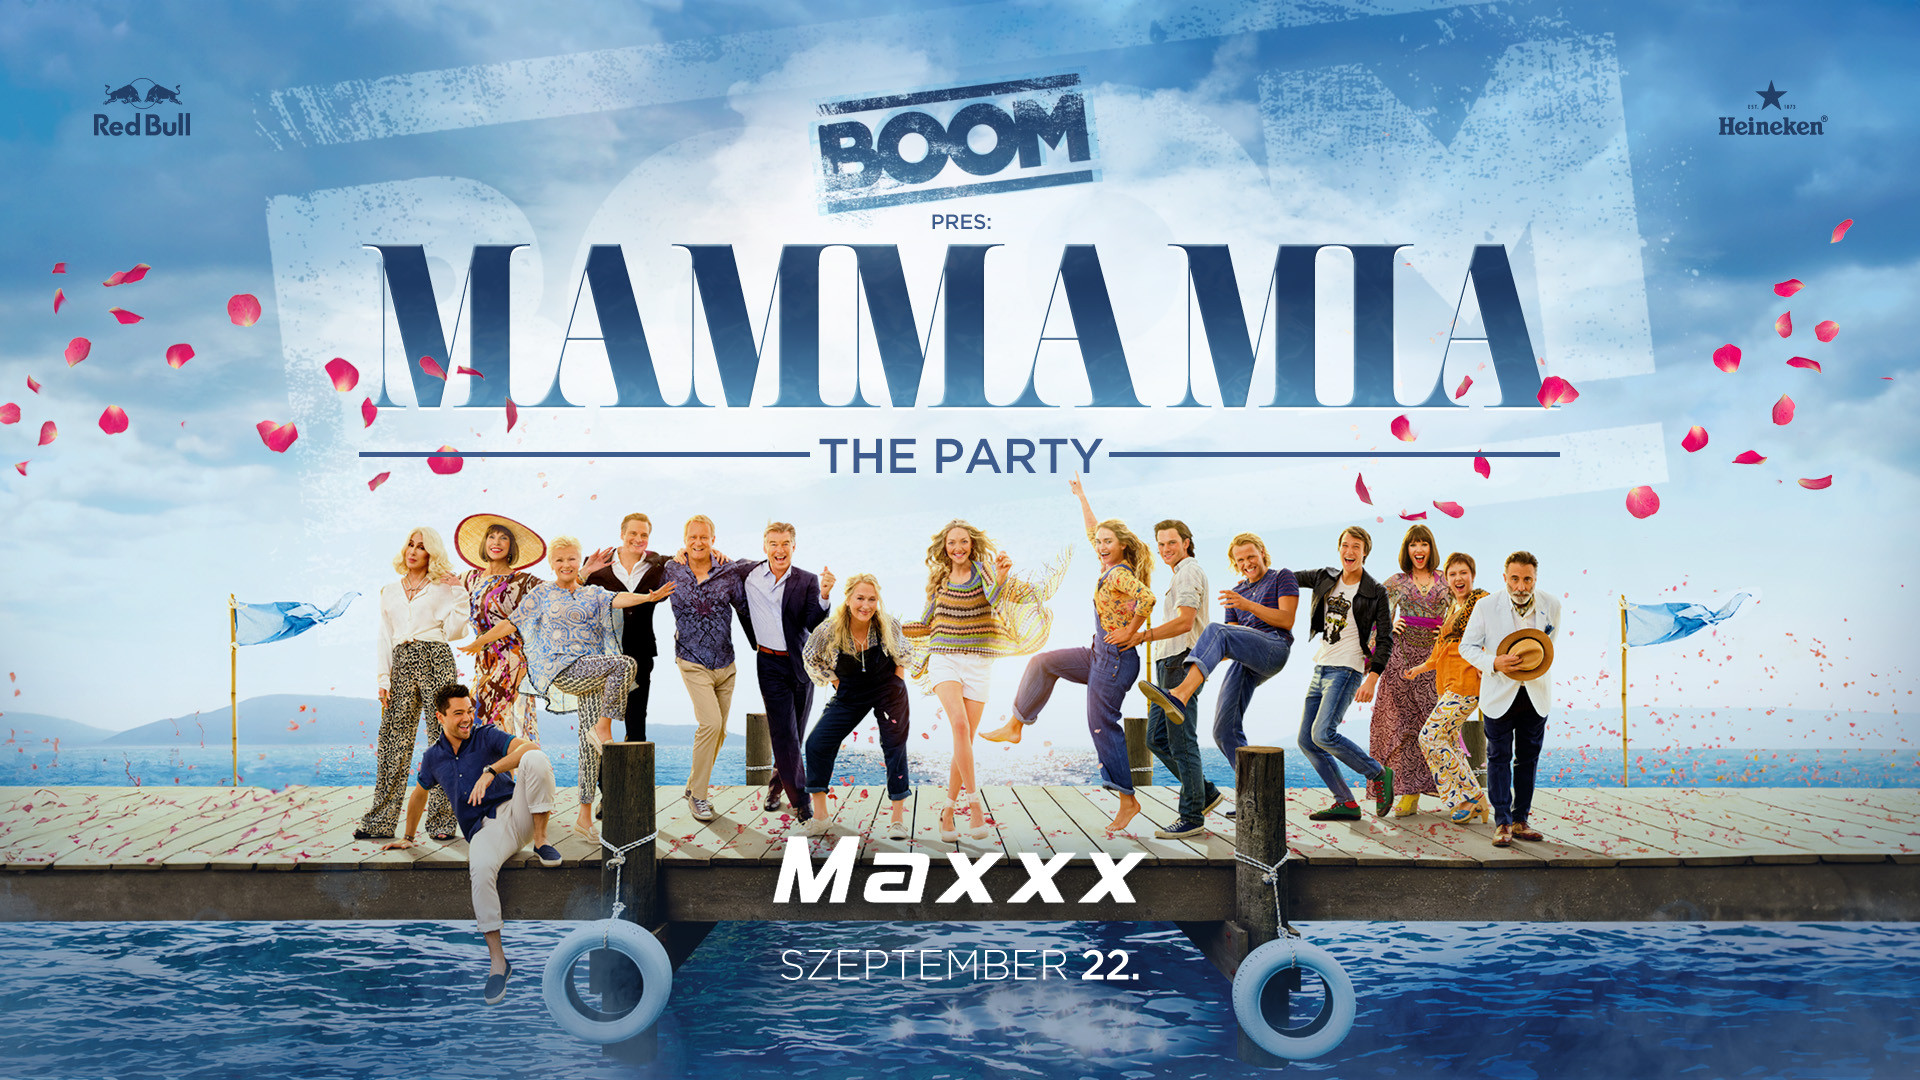 Mamma Mia - The Party | 09.22. | Maxxx Club